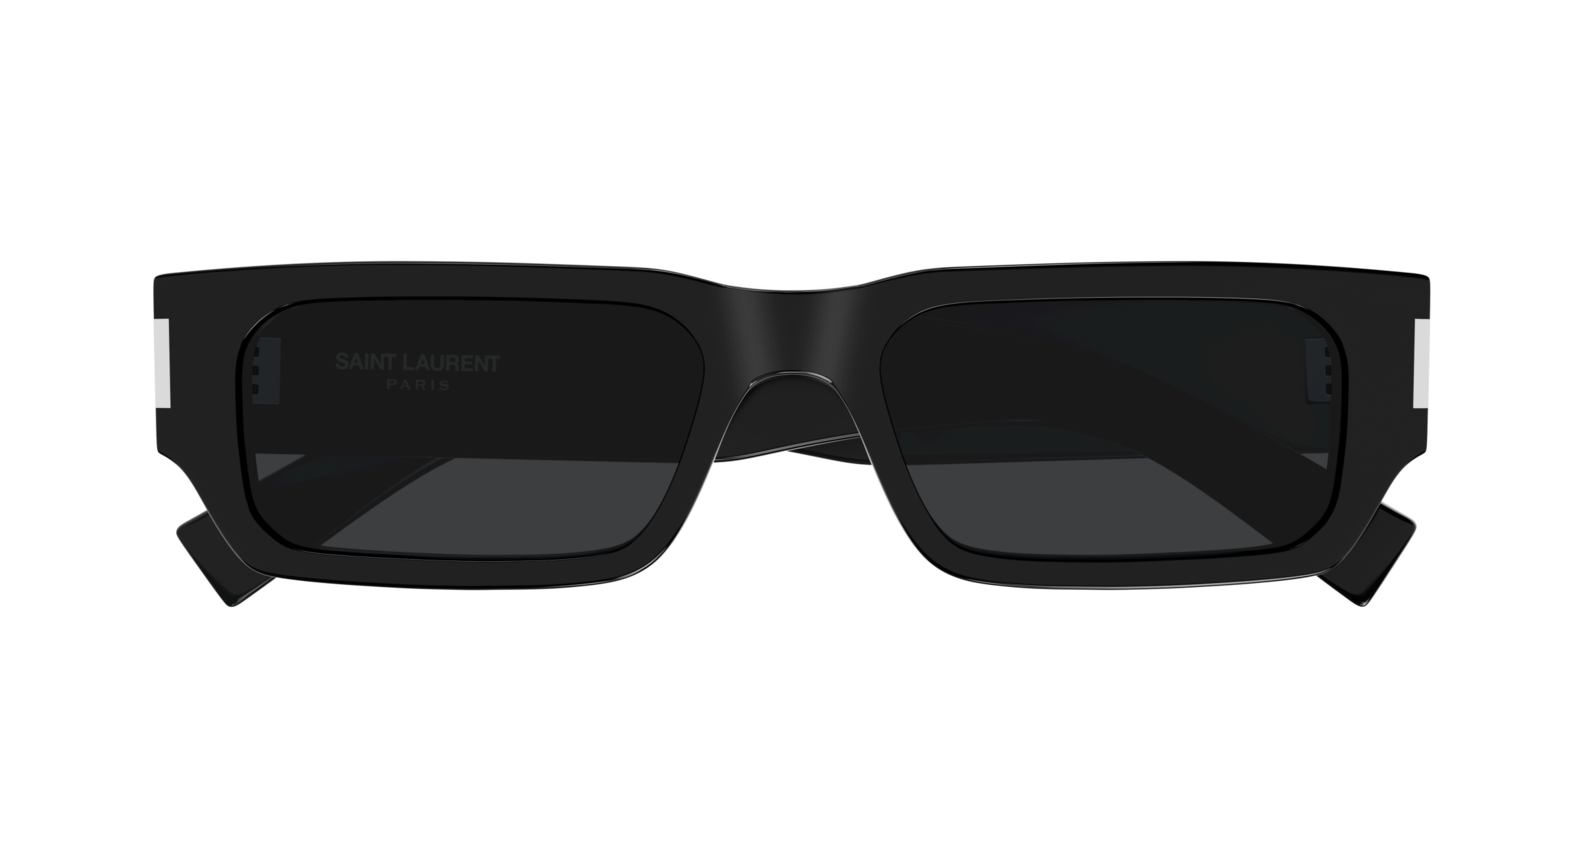 Solglasögon sl 660 black crystal black för 4499 kr på Bergqvist Skor